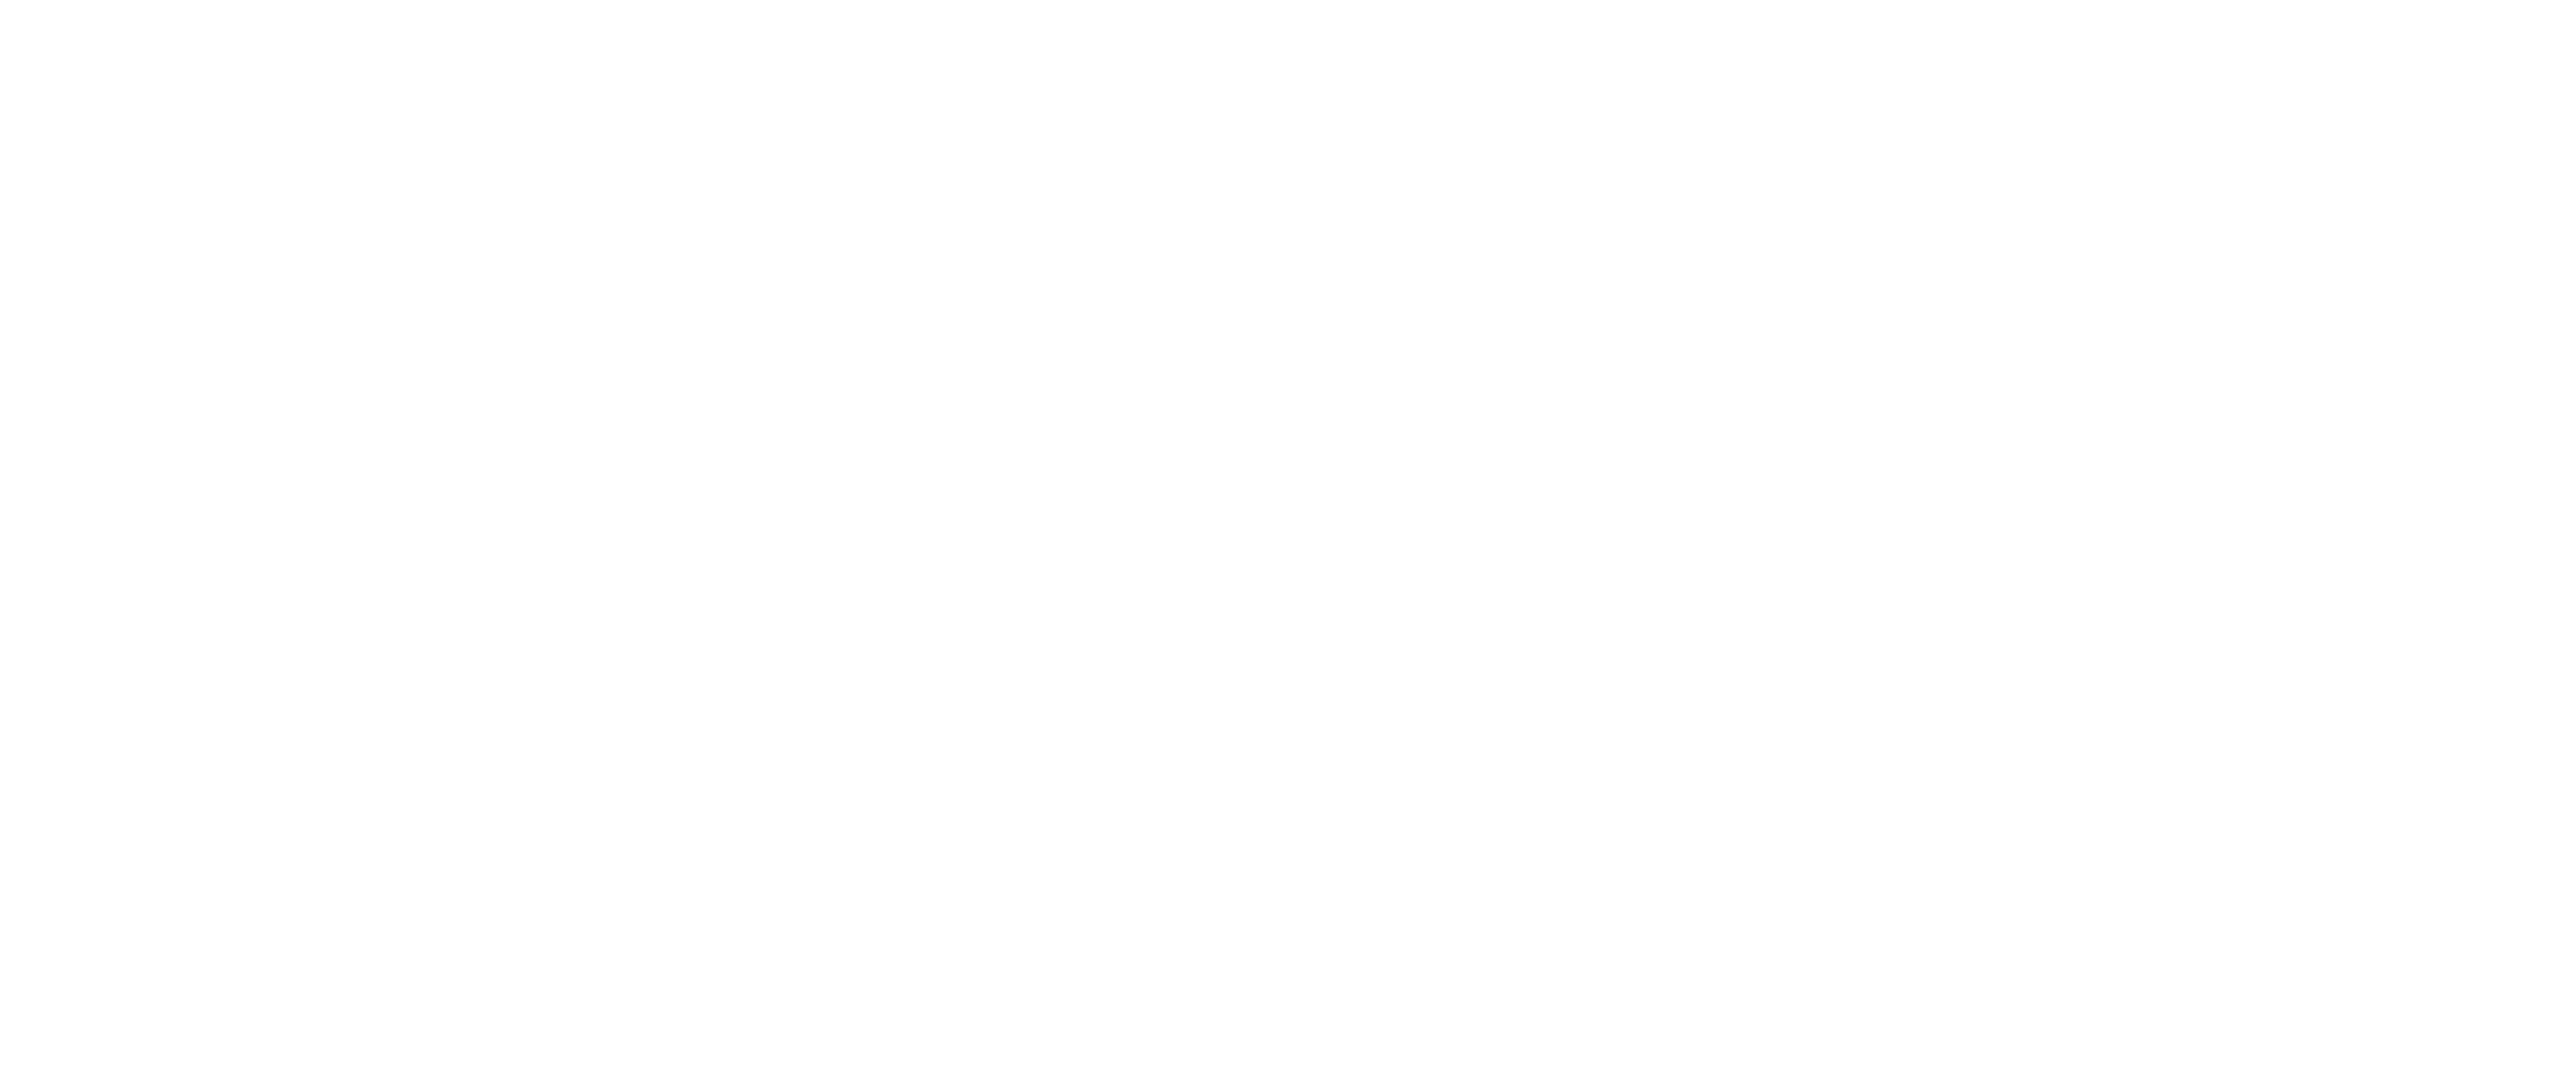 Century-21-logo-logo-white copy